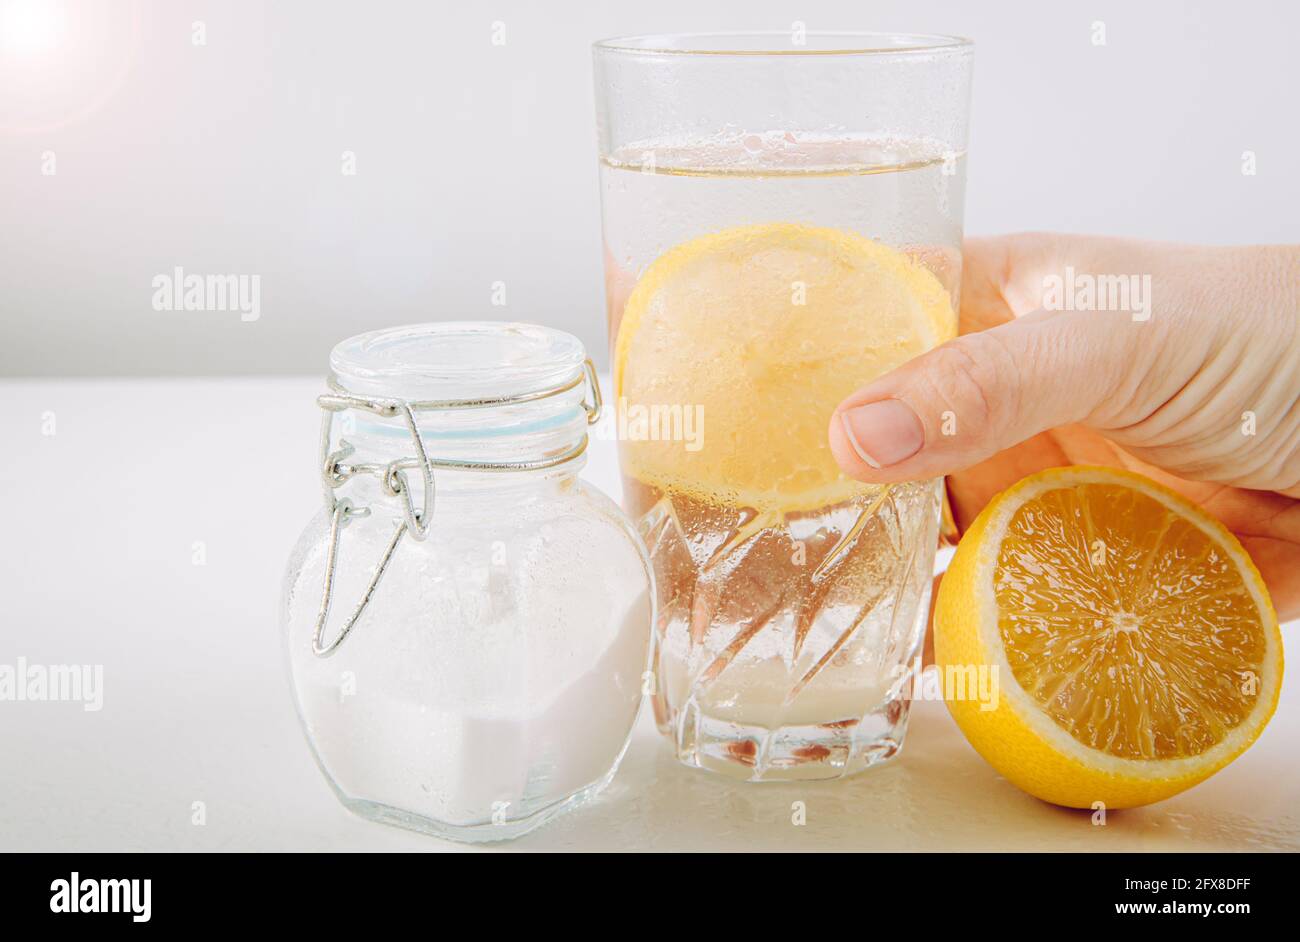 Vaso de beber con bicarbonato de sodio, infusión de agua y jugo de limón, beneficios para la salud del concepto del sistema digestivo. Fondo blanco mínimo. Foto de stock